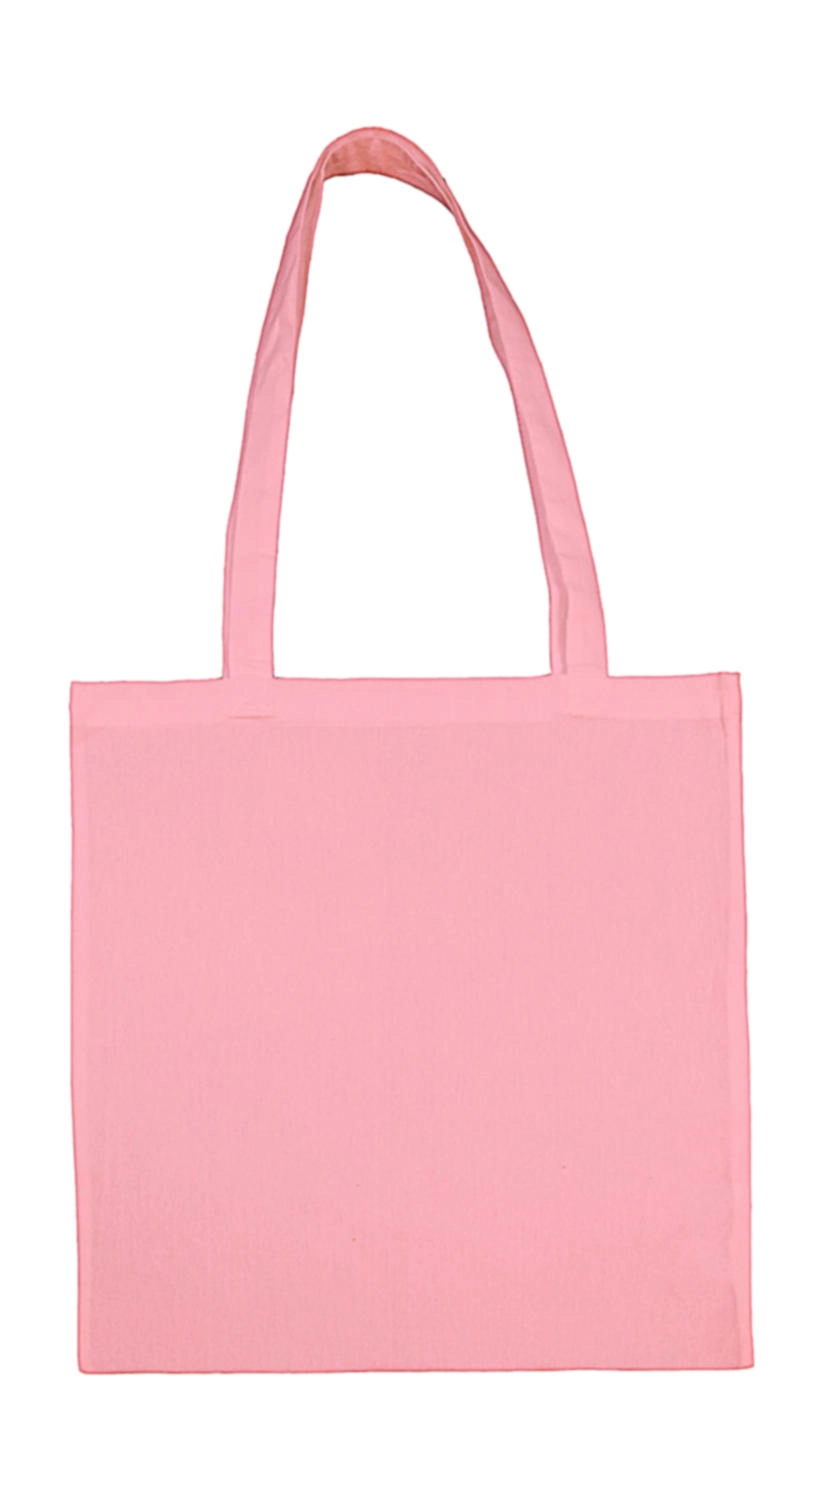 Cotton Bag LH zum Besticken und Bedrucken in der Farbe Rose mit Ihren Logo, Schriftzug oder Motiv.